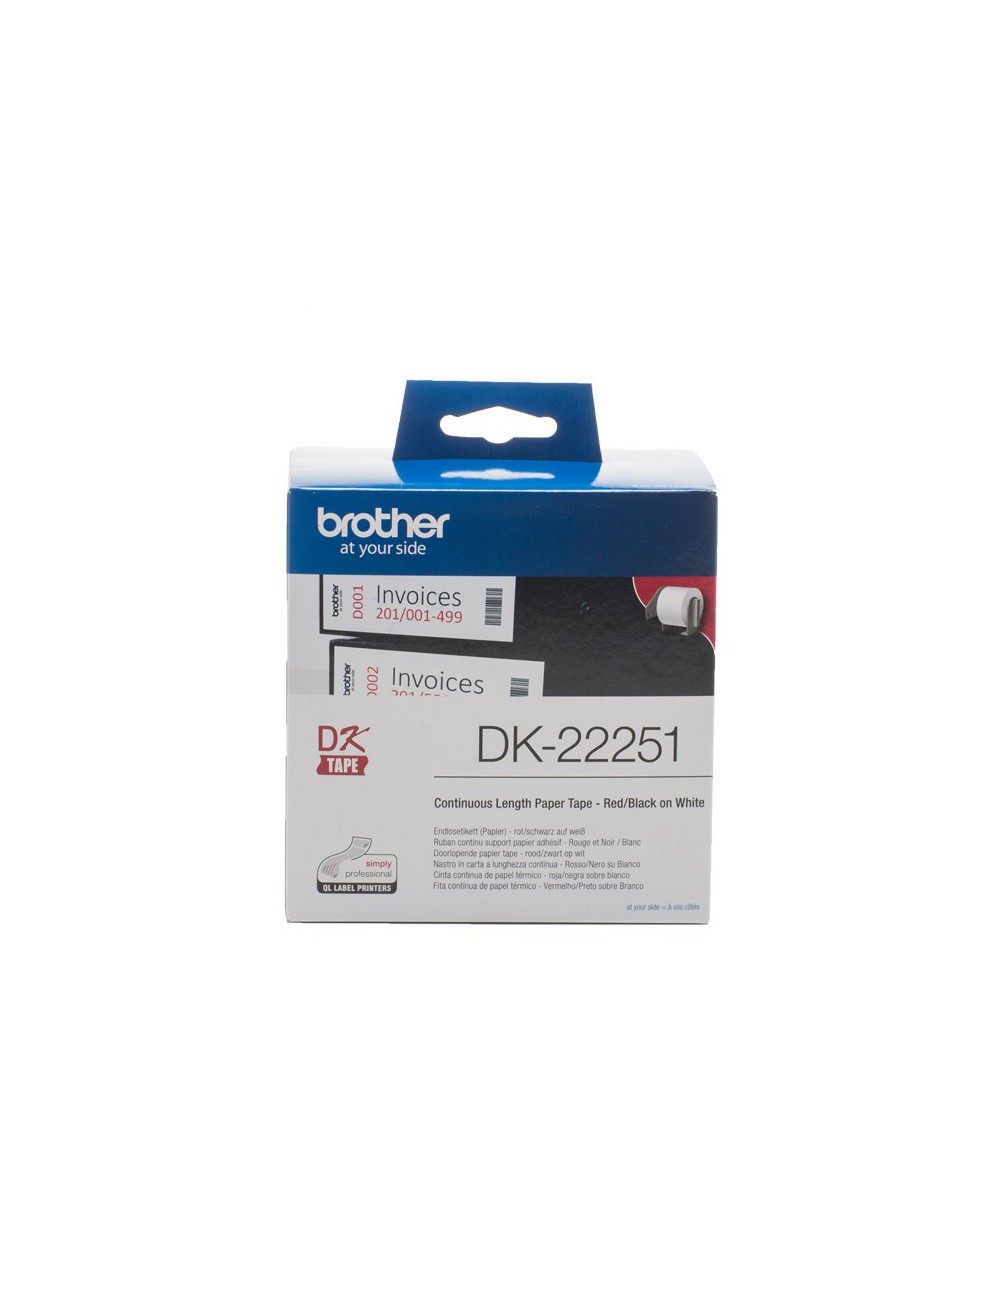 Brother DK-22251 cinta para impresora de etiquetas Negro y rojo sobre blanco